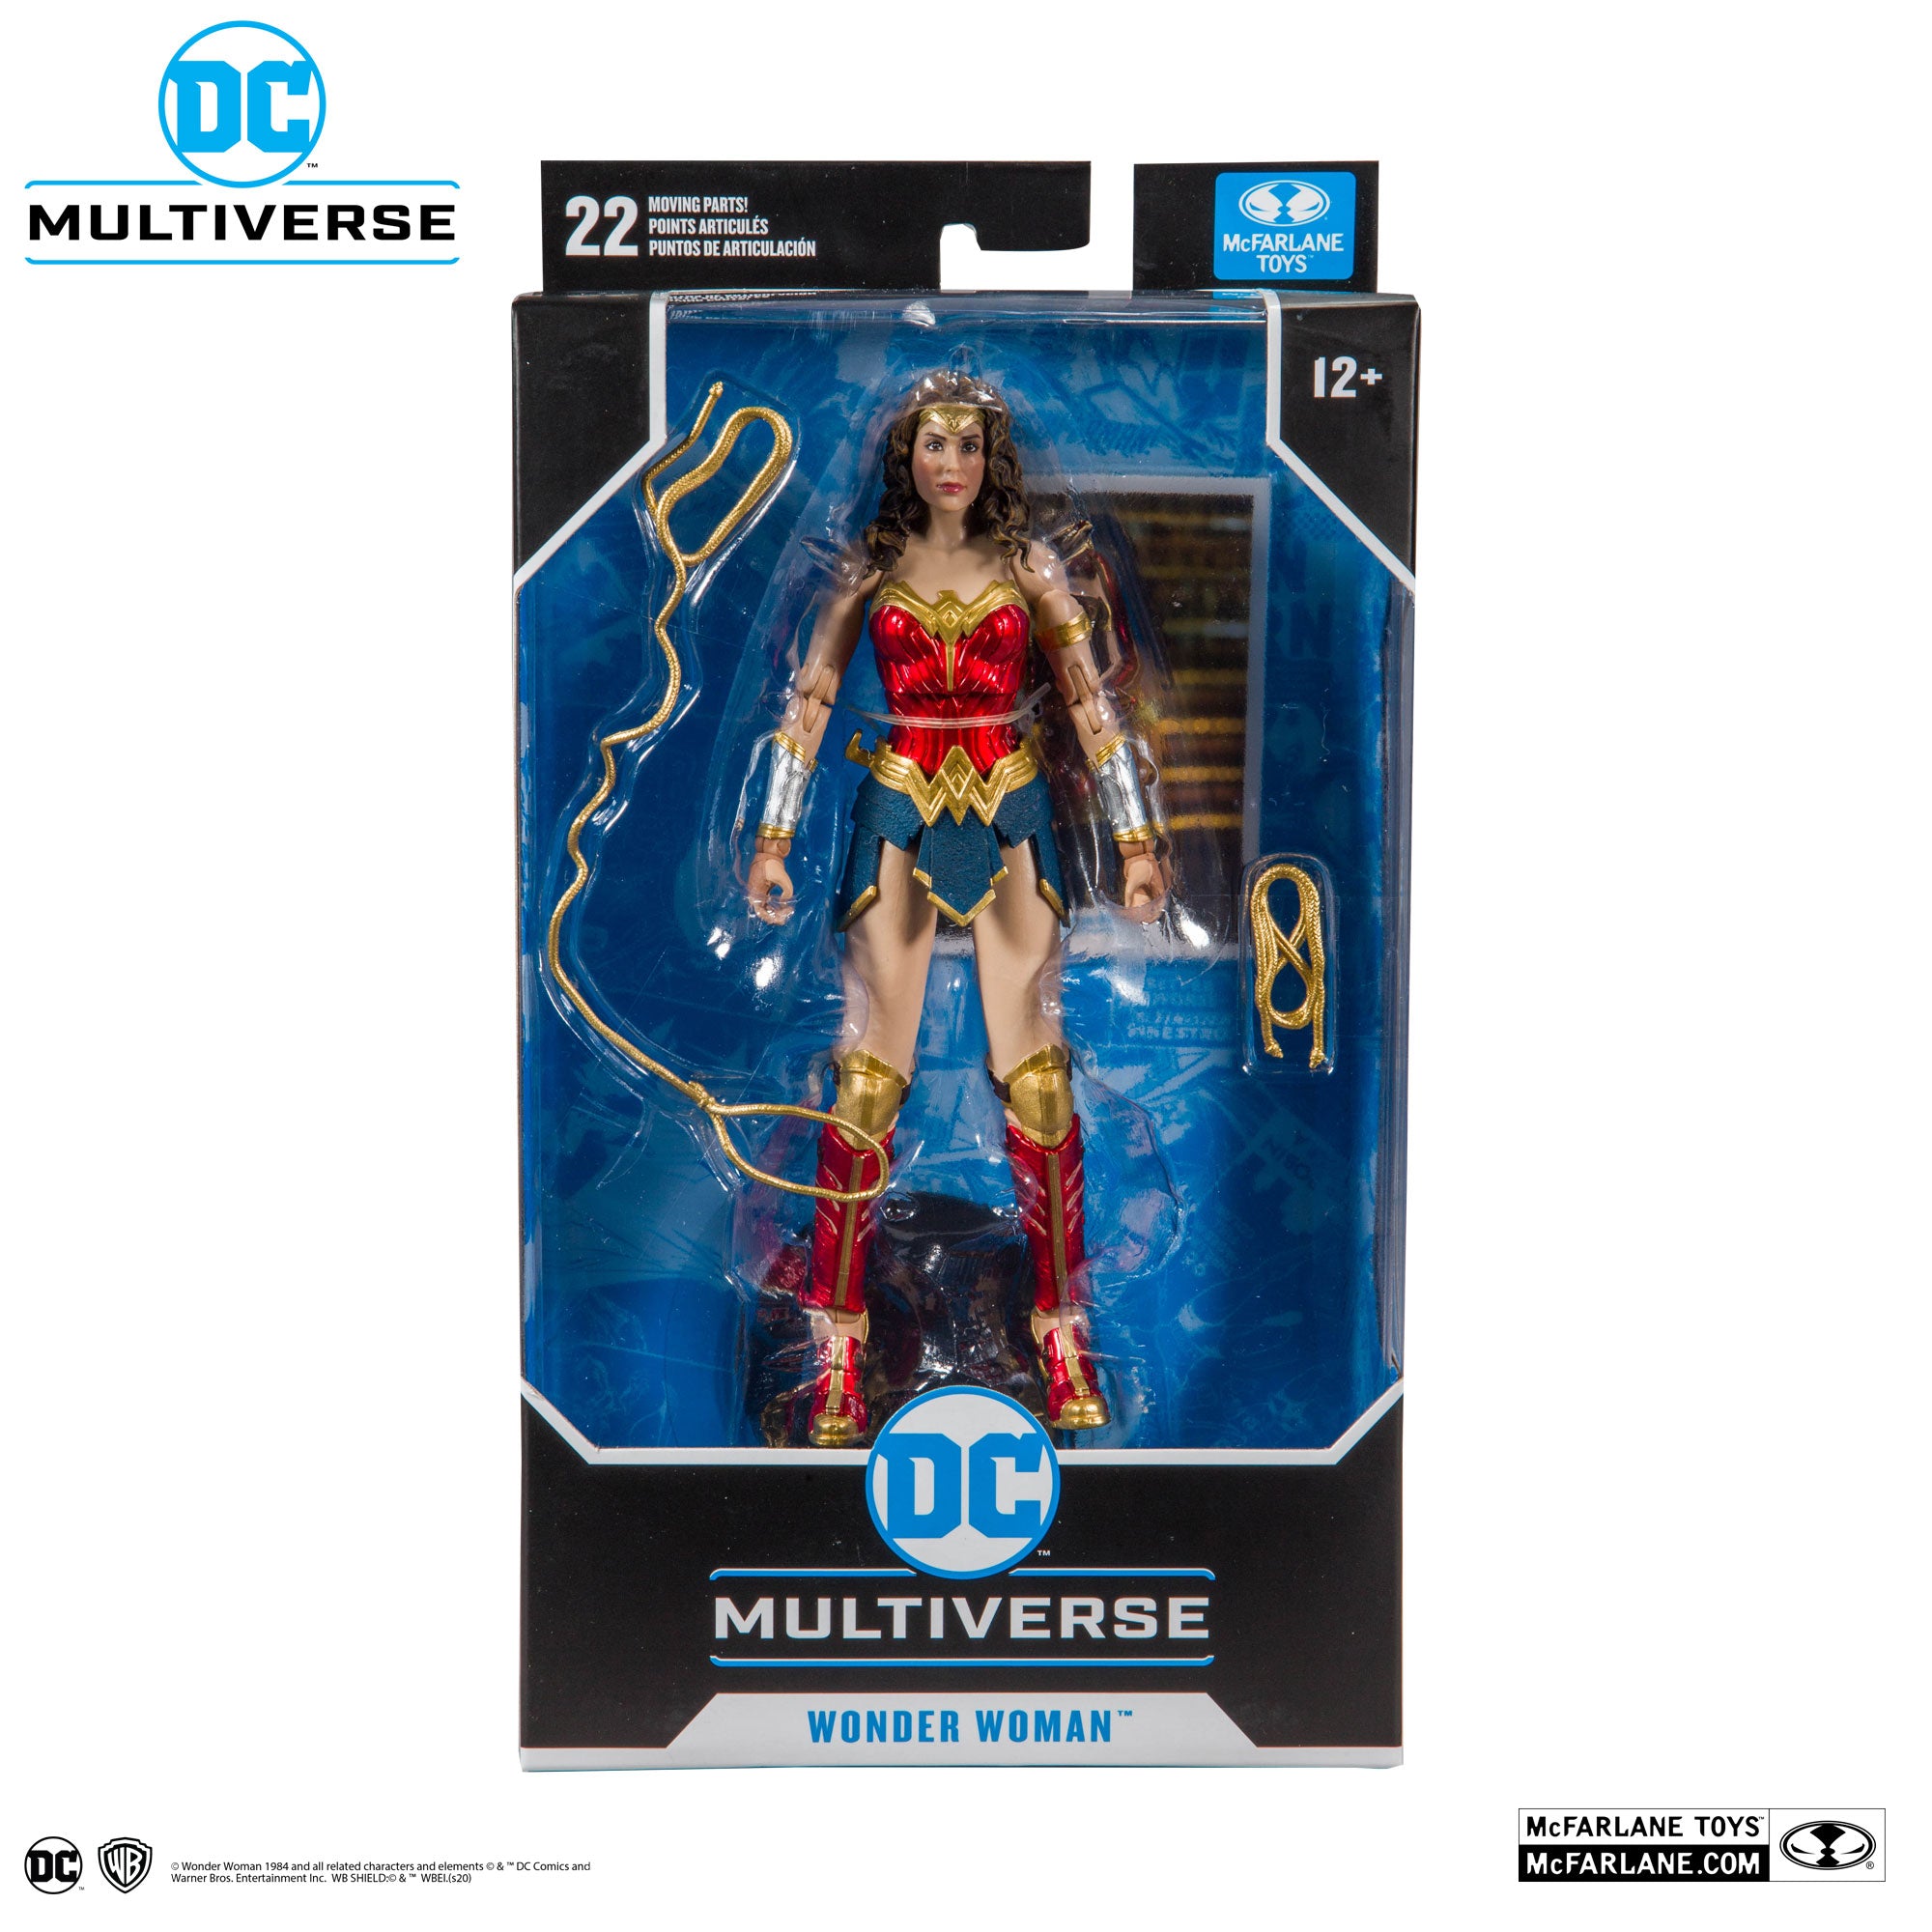 DC Multiverse Wonder Woman 1984 - McFarlane Toys-1